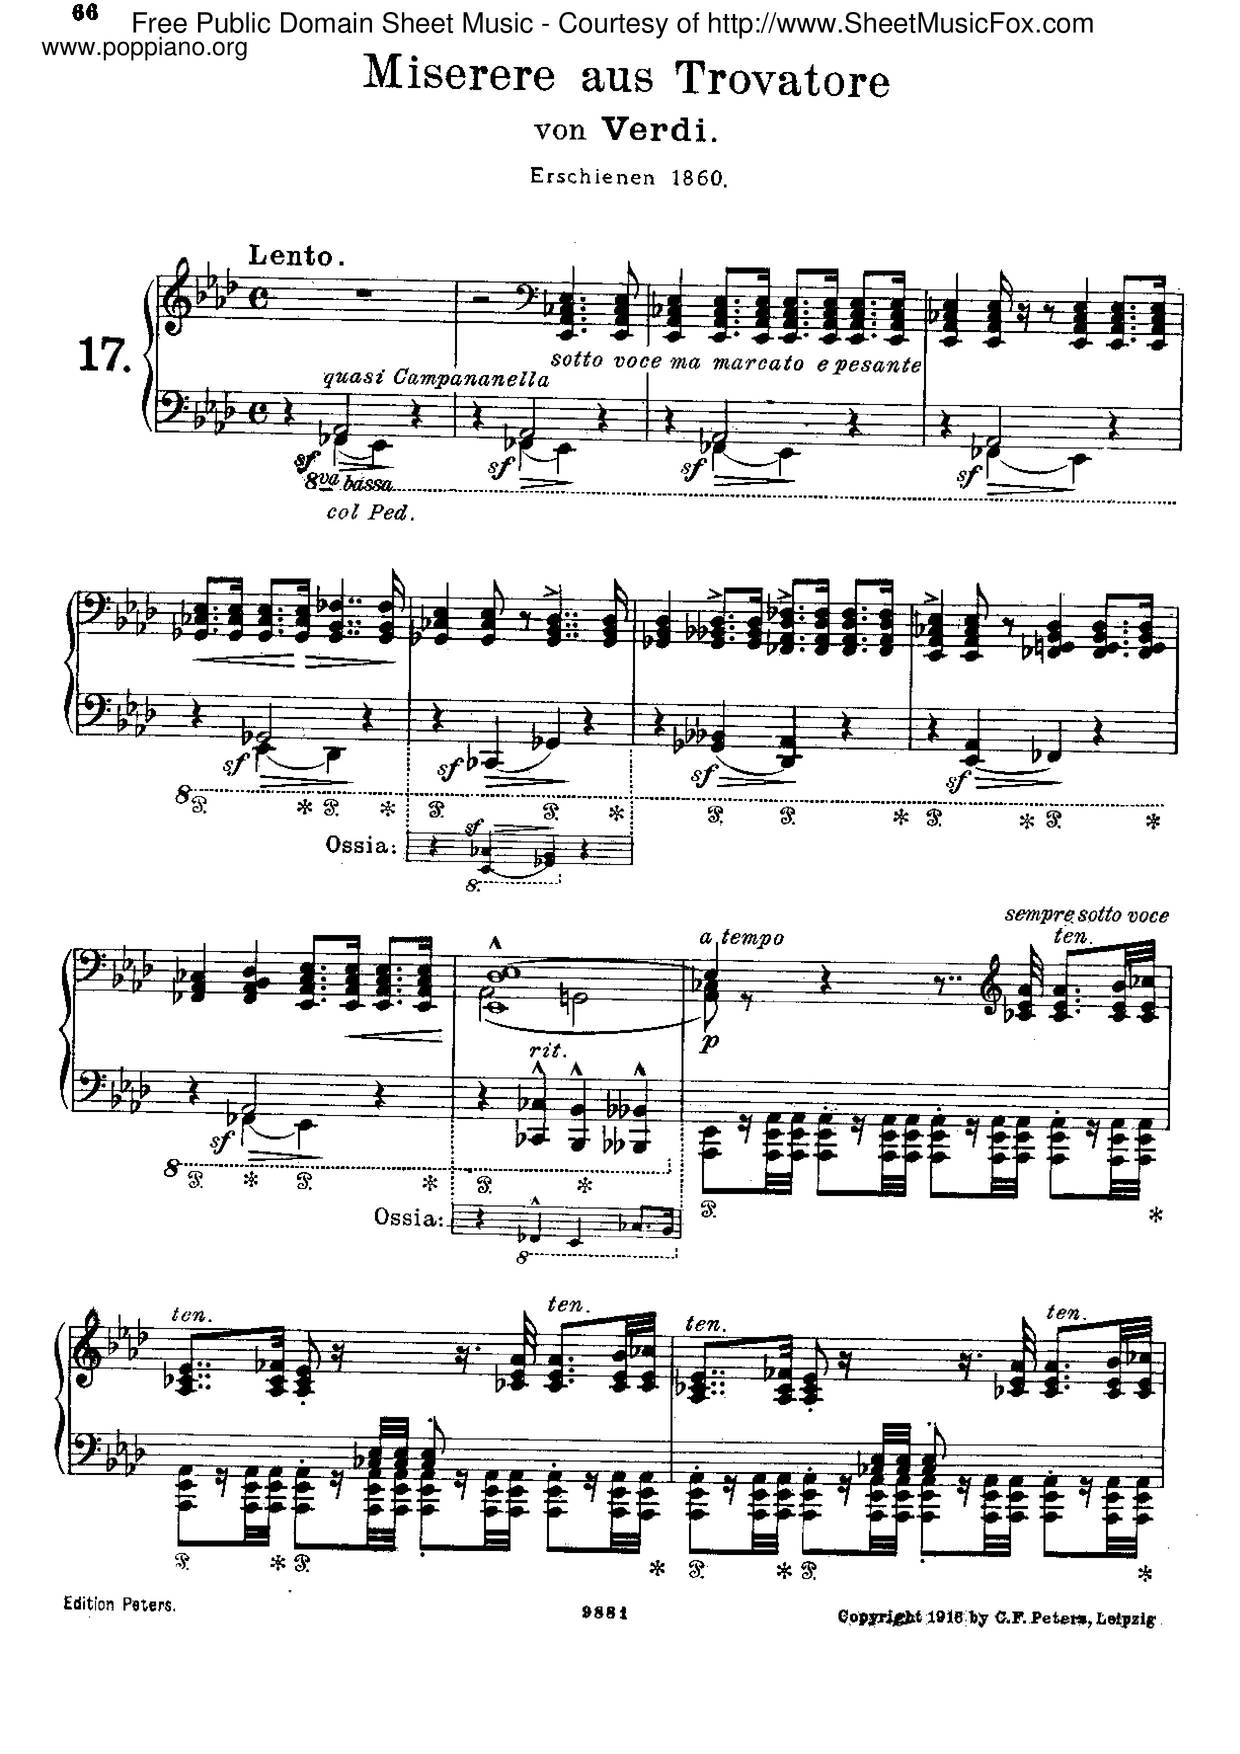 Miserere Du Trovatore De Verdi, S.433 Score